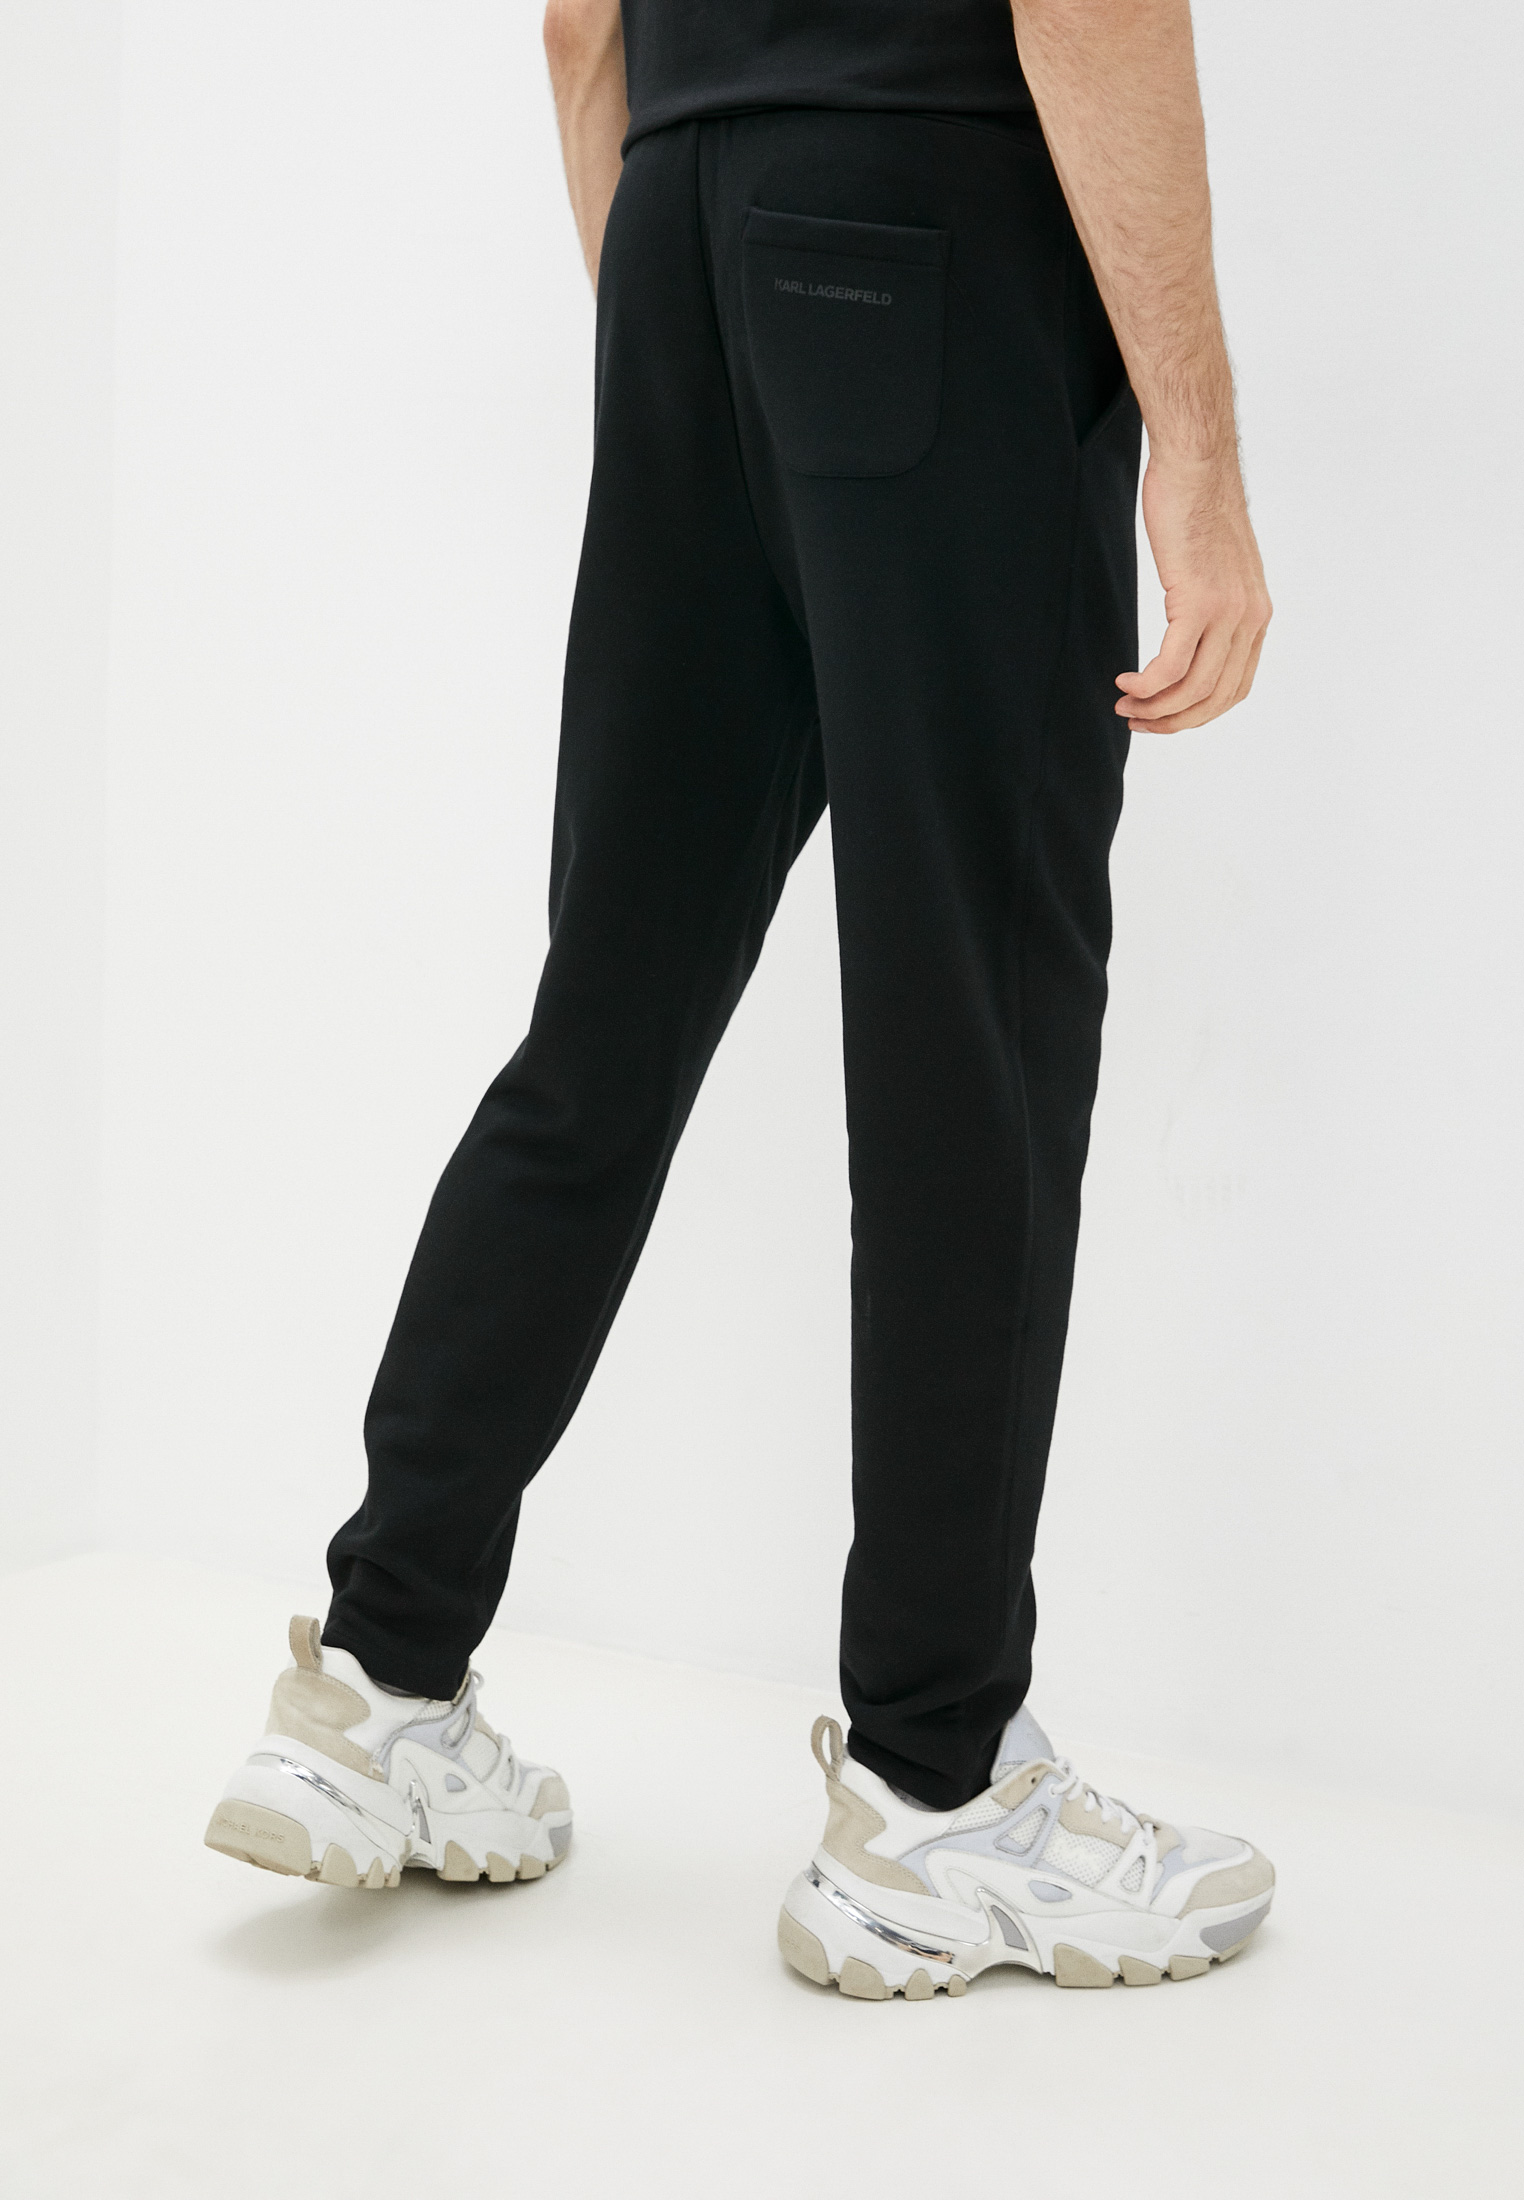 Мужские спортивные брюки Karl Lagerfeld (Карл Лагерфельд) 512910-705042: изображение 4